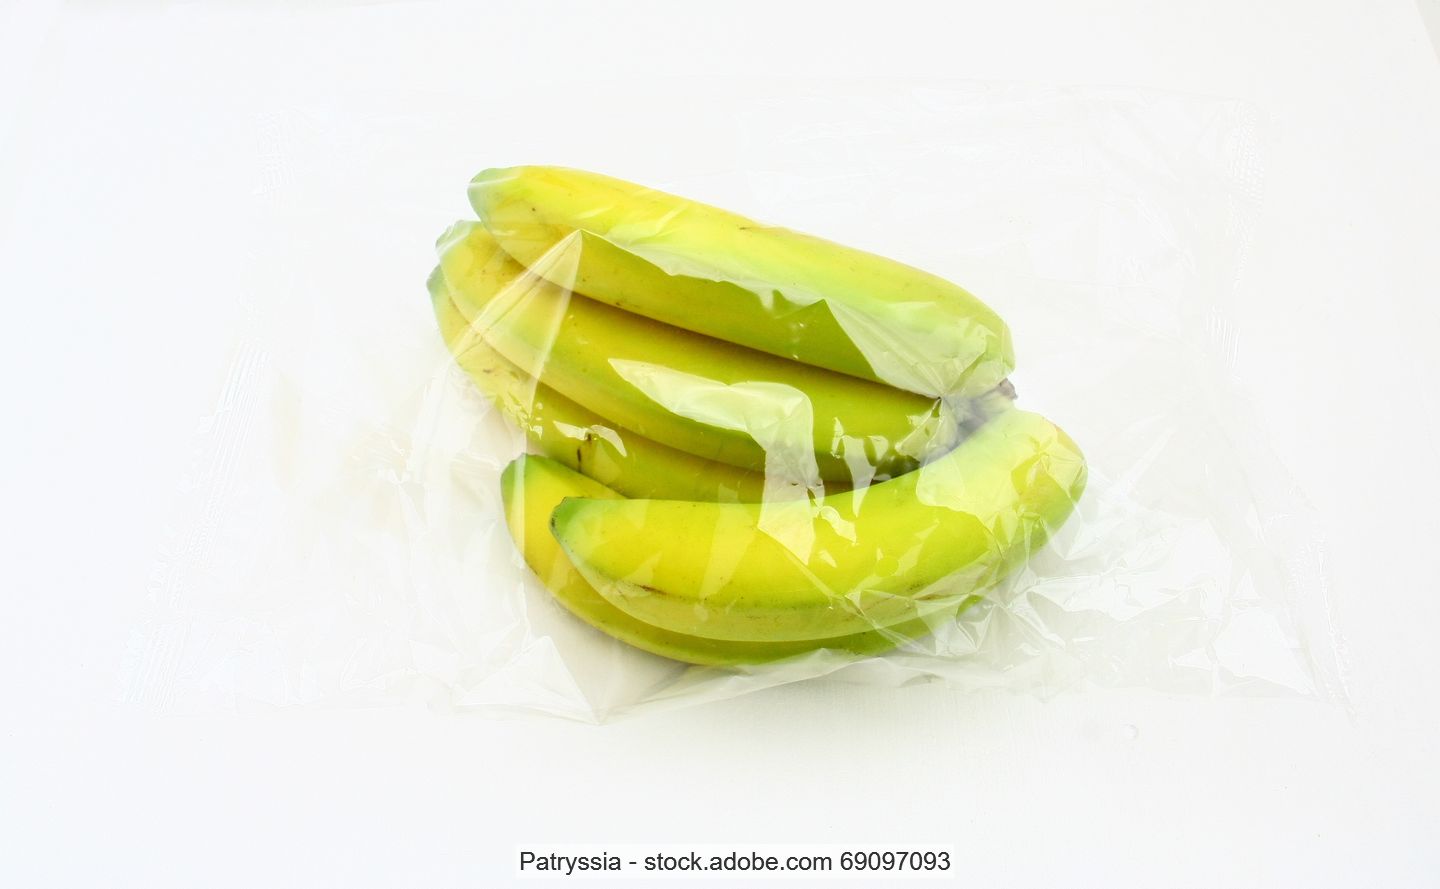 Bündel von fünf Bananen in einer durchsichtigen Kunststofftüte eingeschweißt